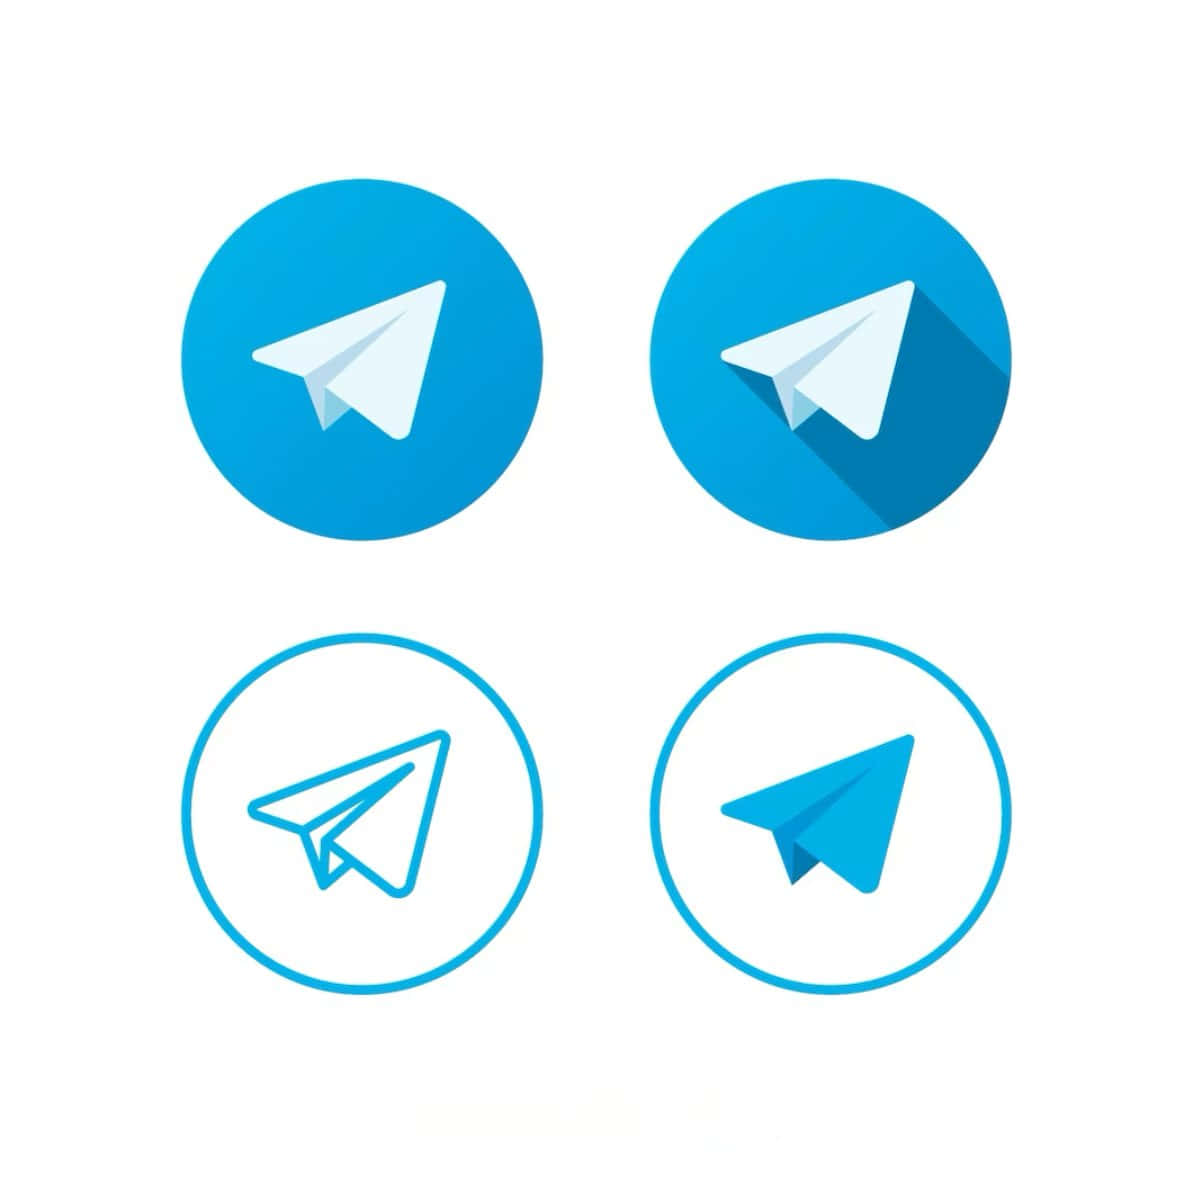 Setdi Icone Di Telegram - Set Di Icone Di Telegram